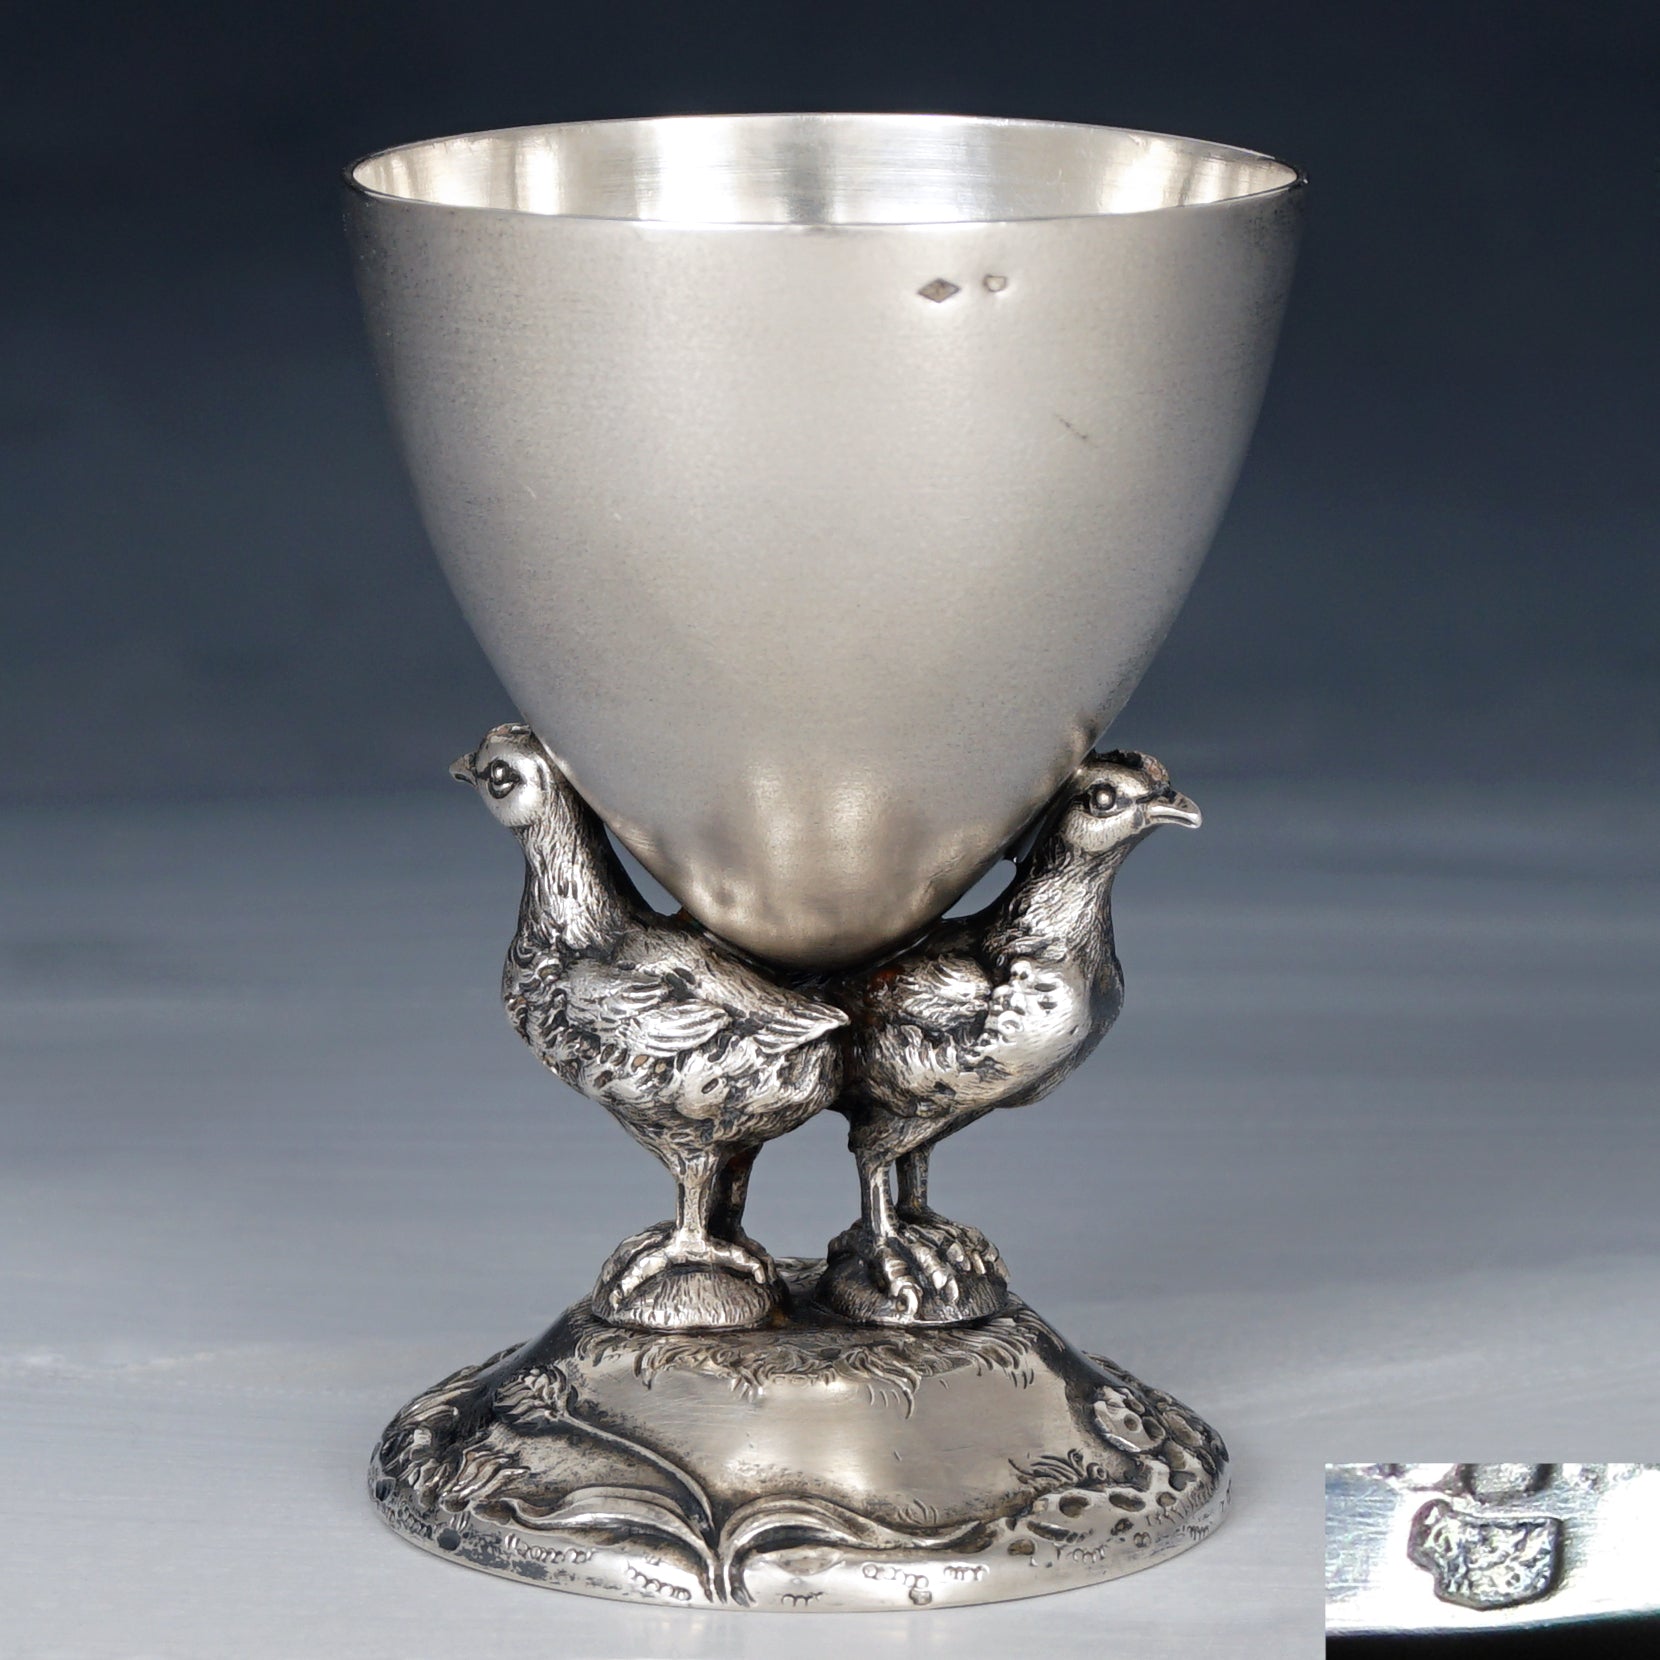 3 Sanssouci German Single Egg Cups - antiques - by owner - collectibles  sale - craigslist